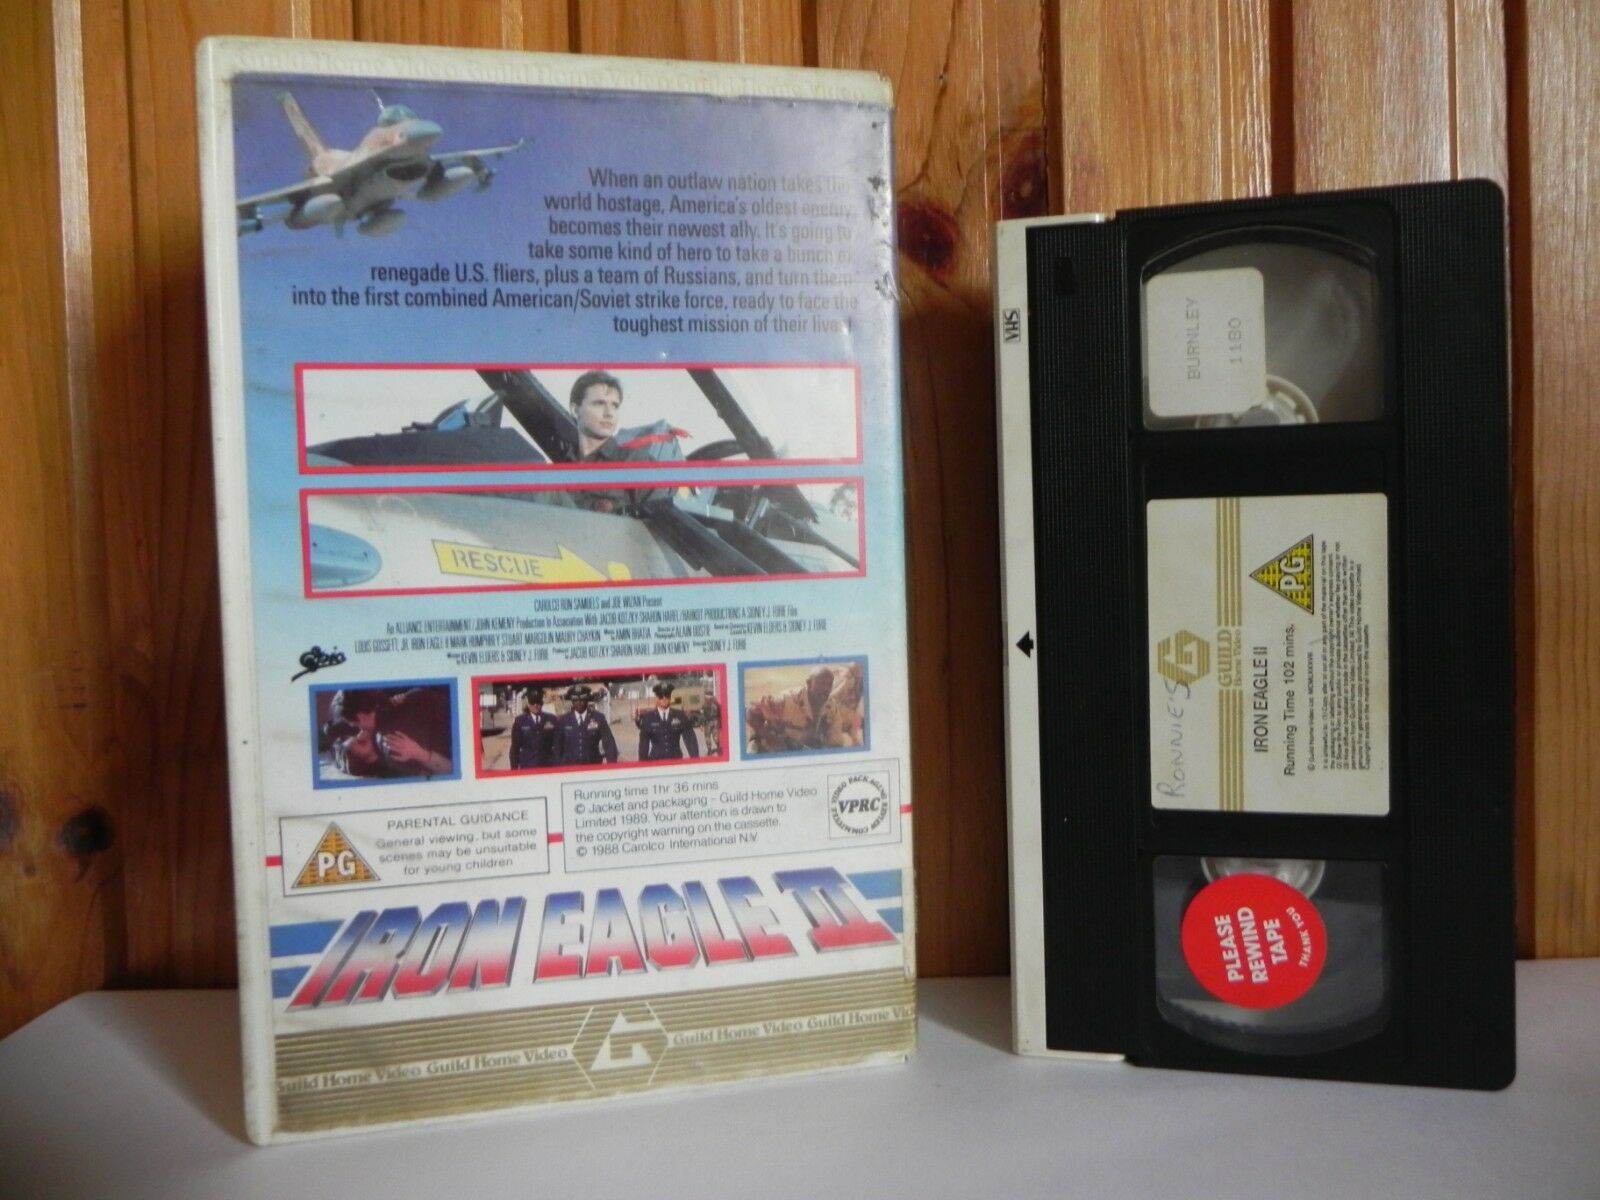 Iron Eagle 2; [Guild] Large Box - Ex-Rental - Action - Louis Gossett, Jr. - Pal VHS-